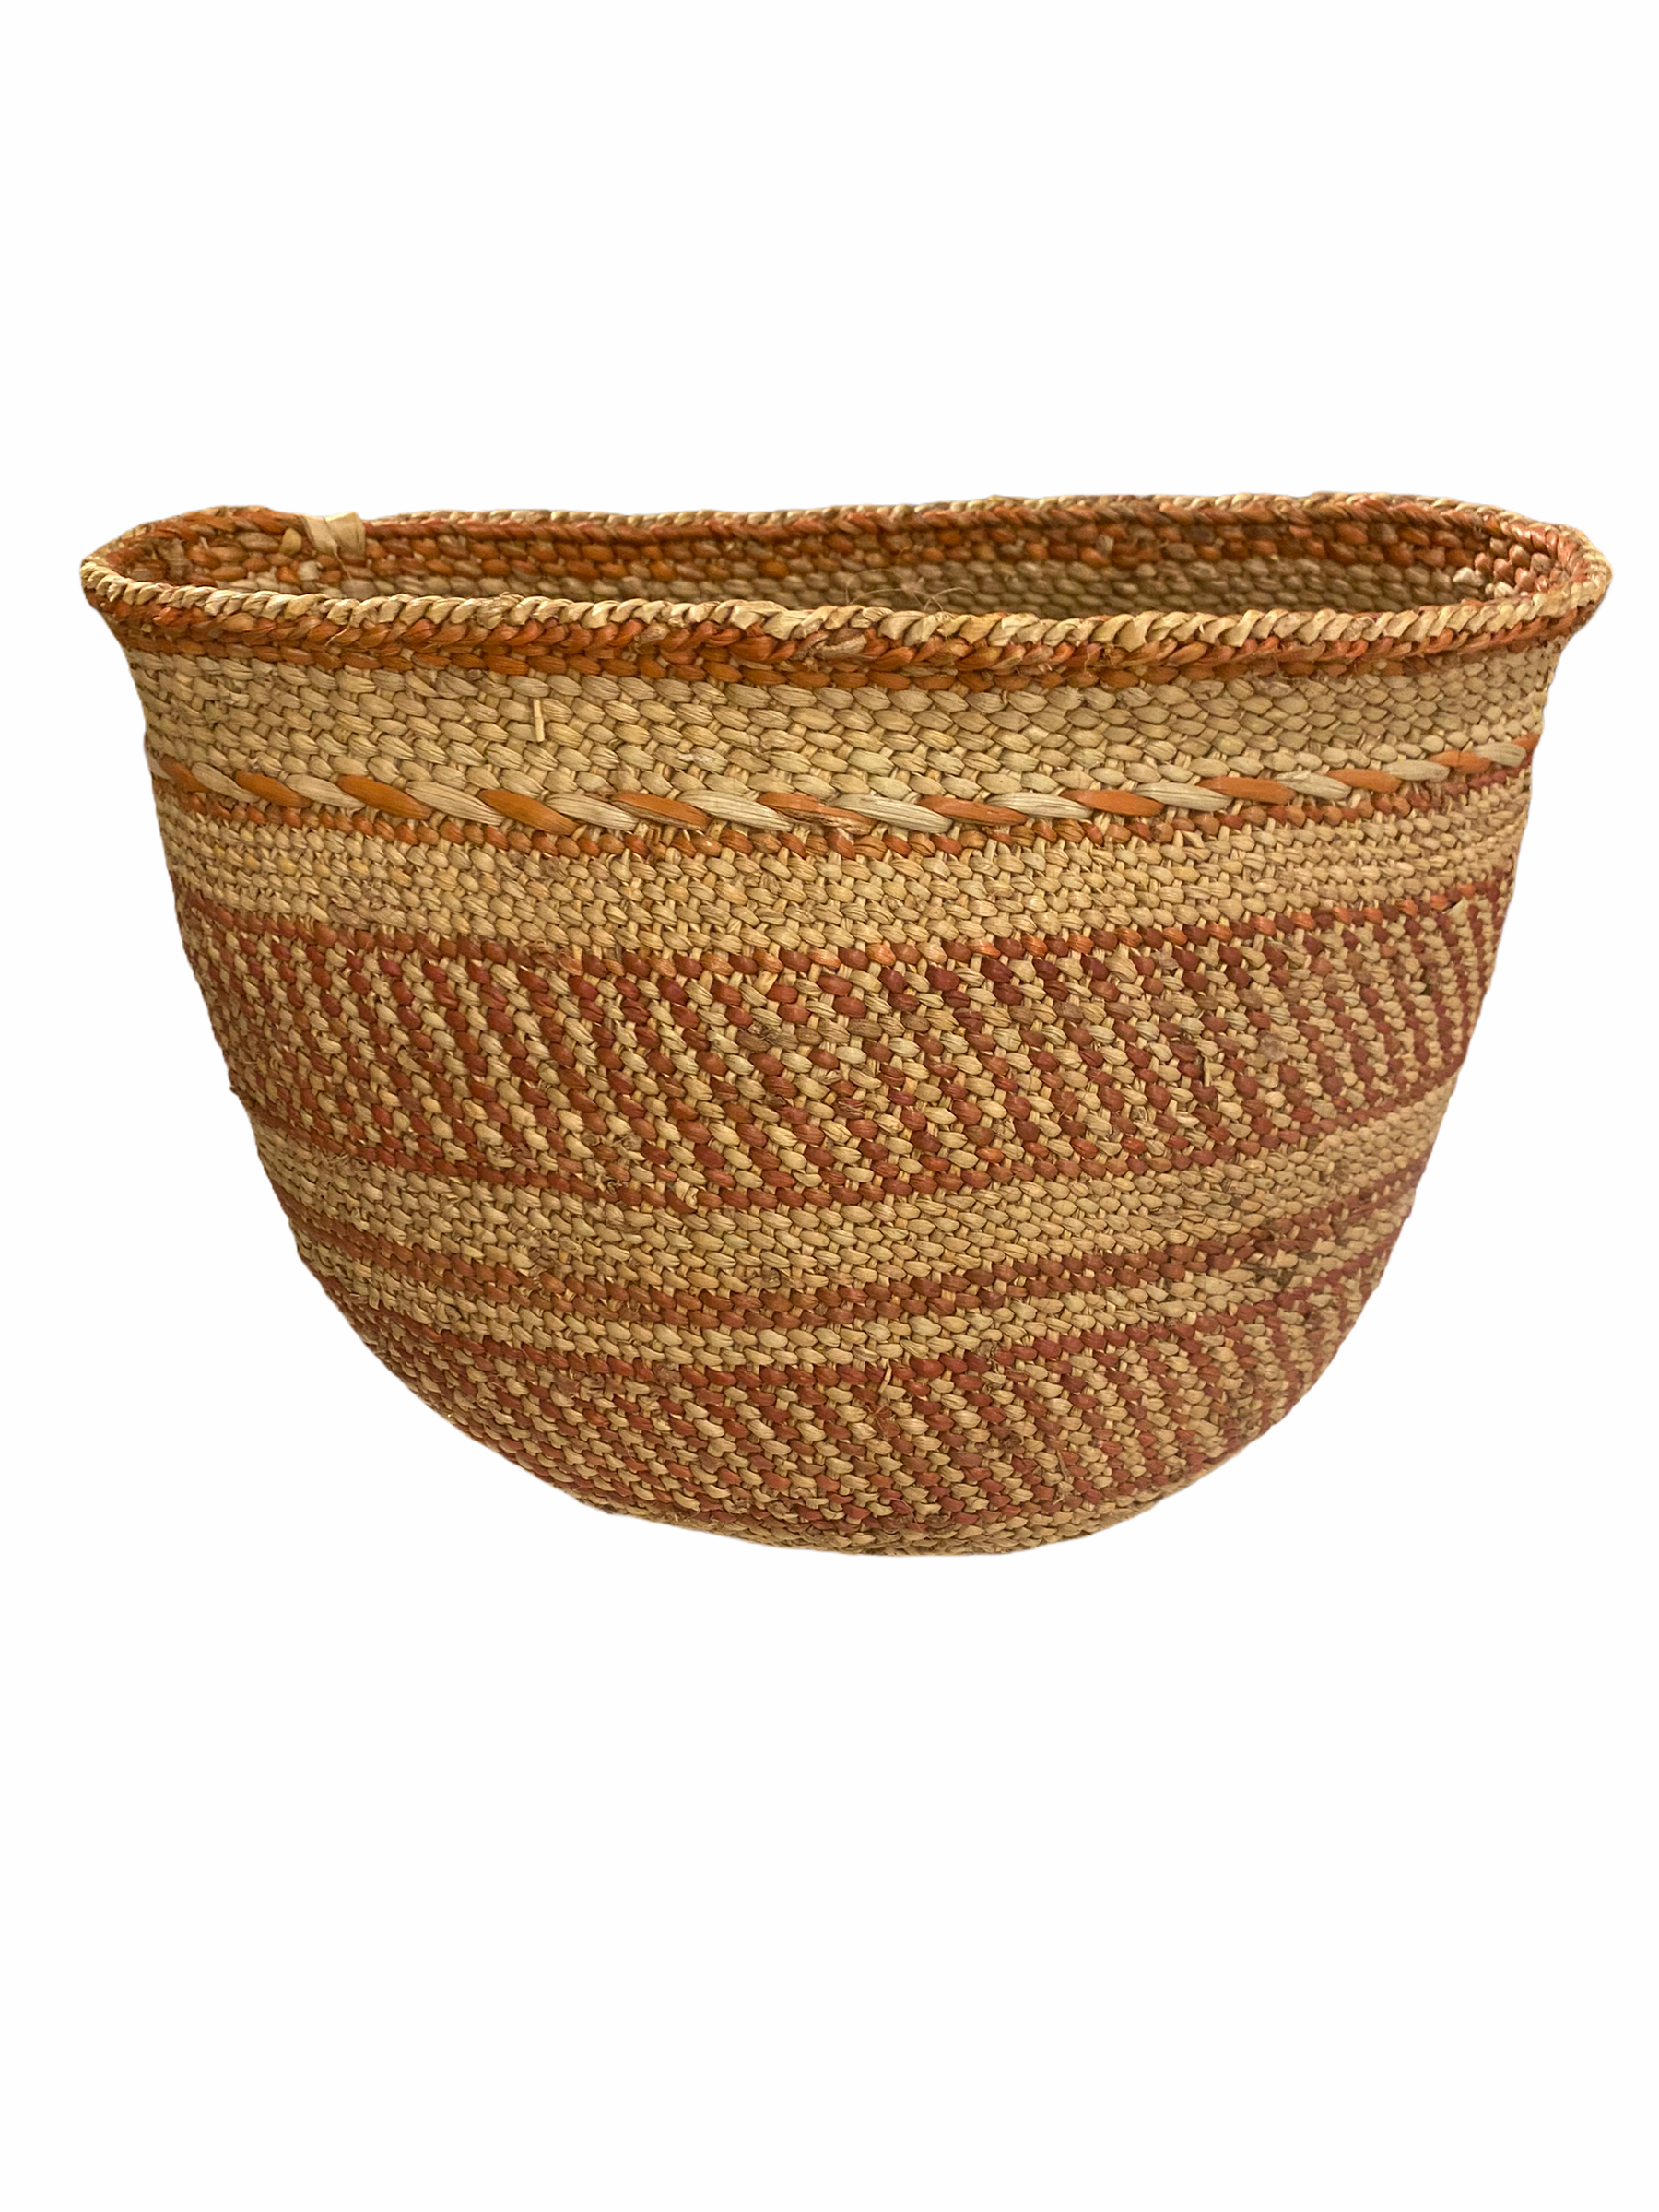 Iringa Basket - Brown Striped - XS